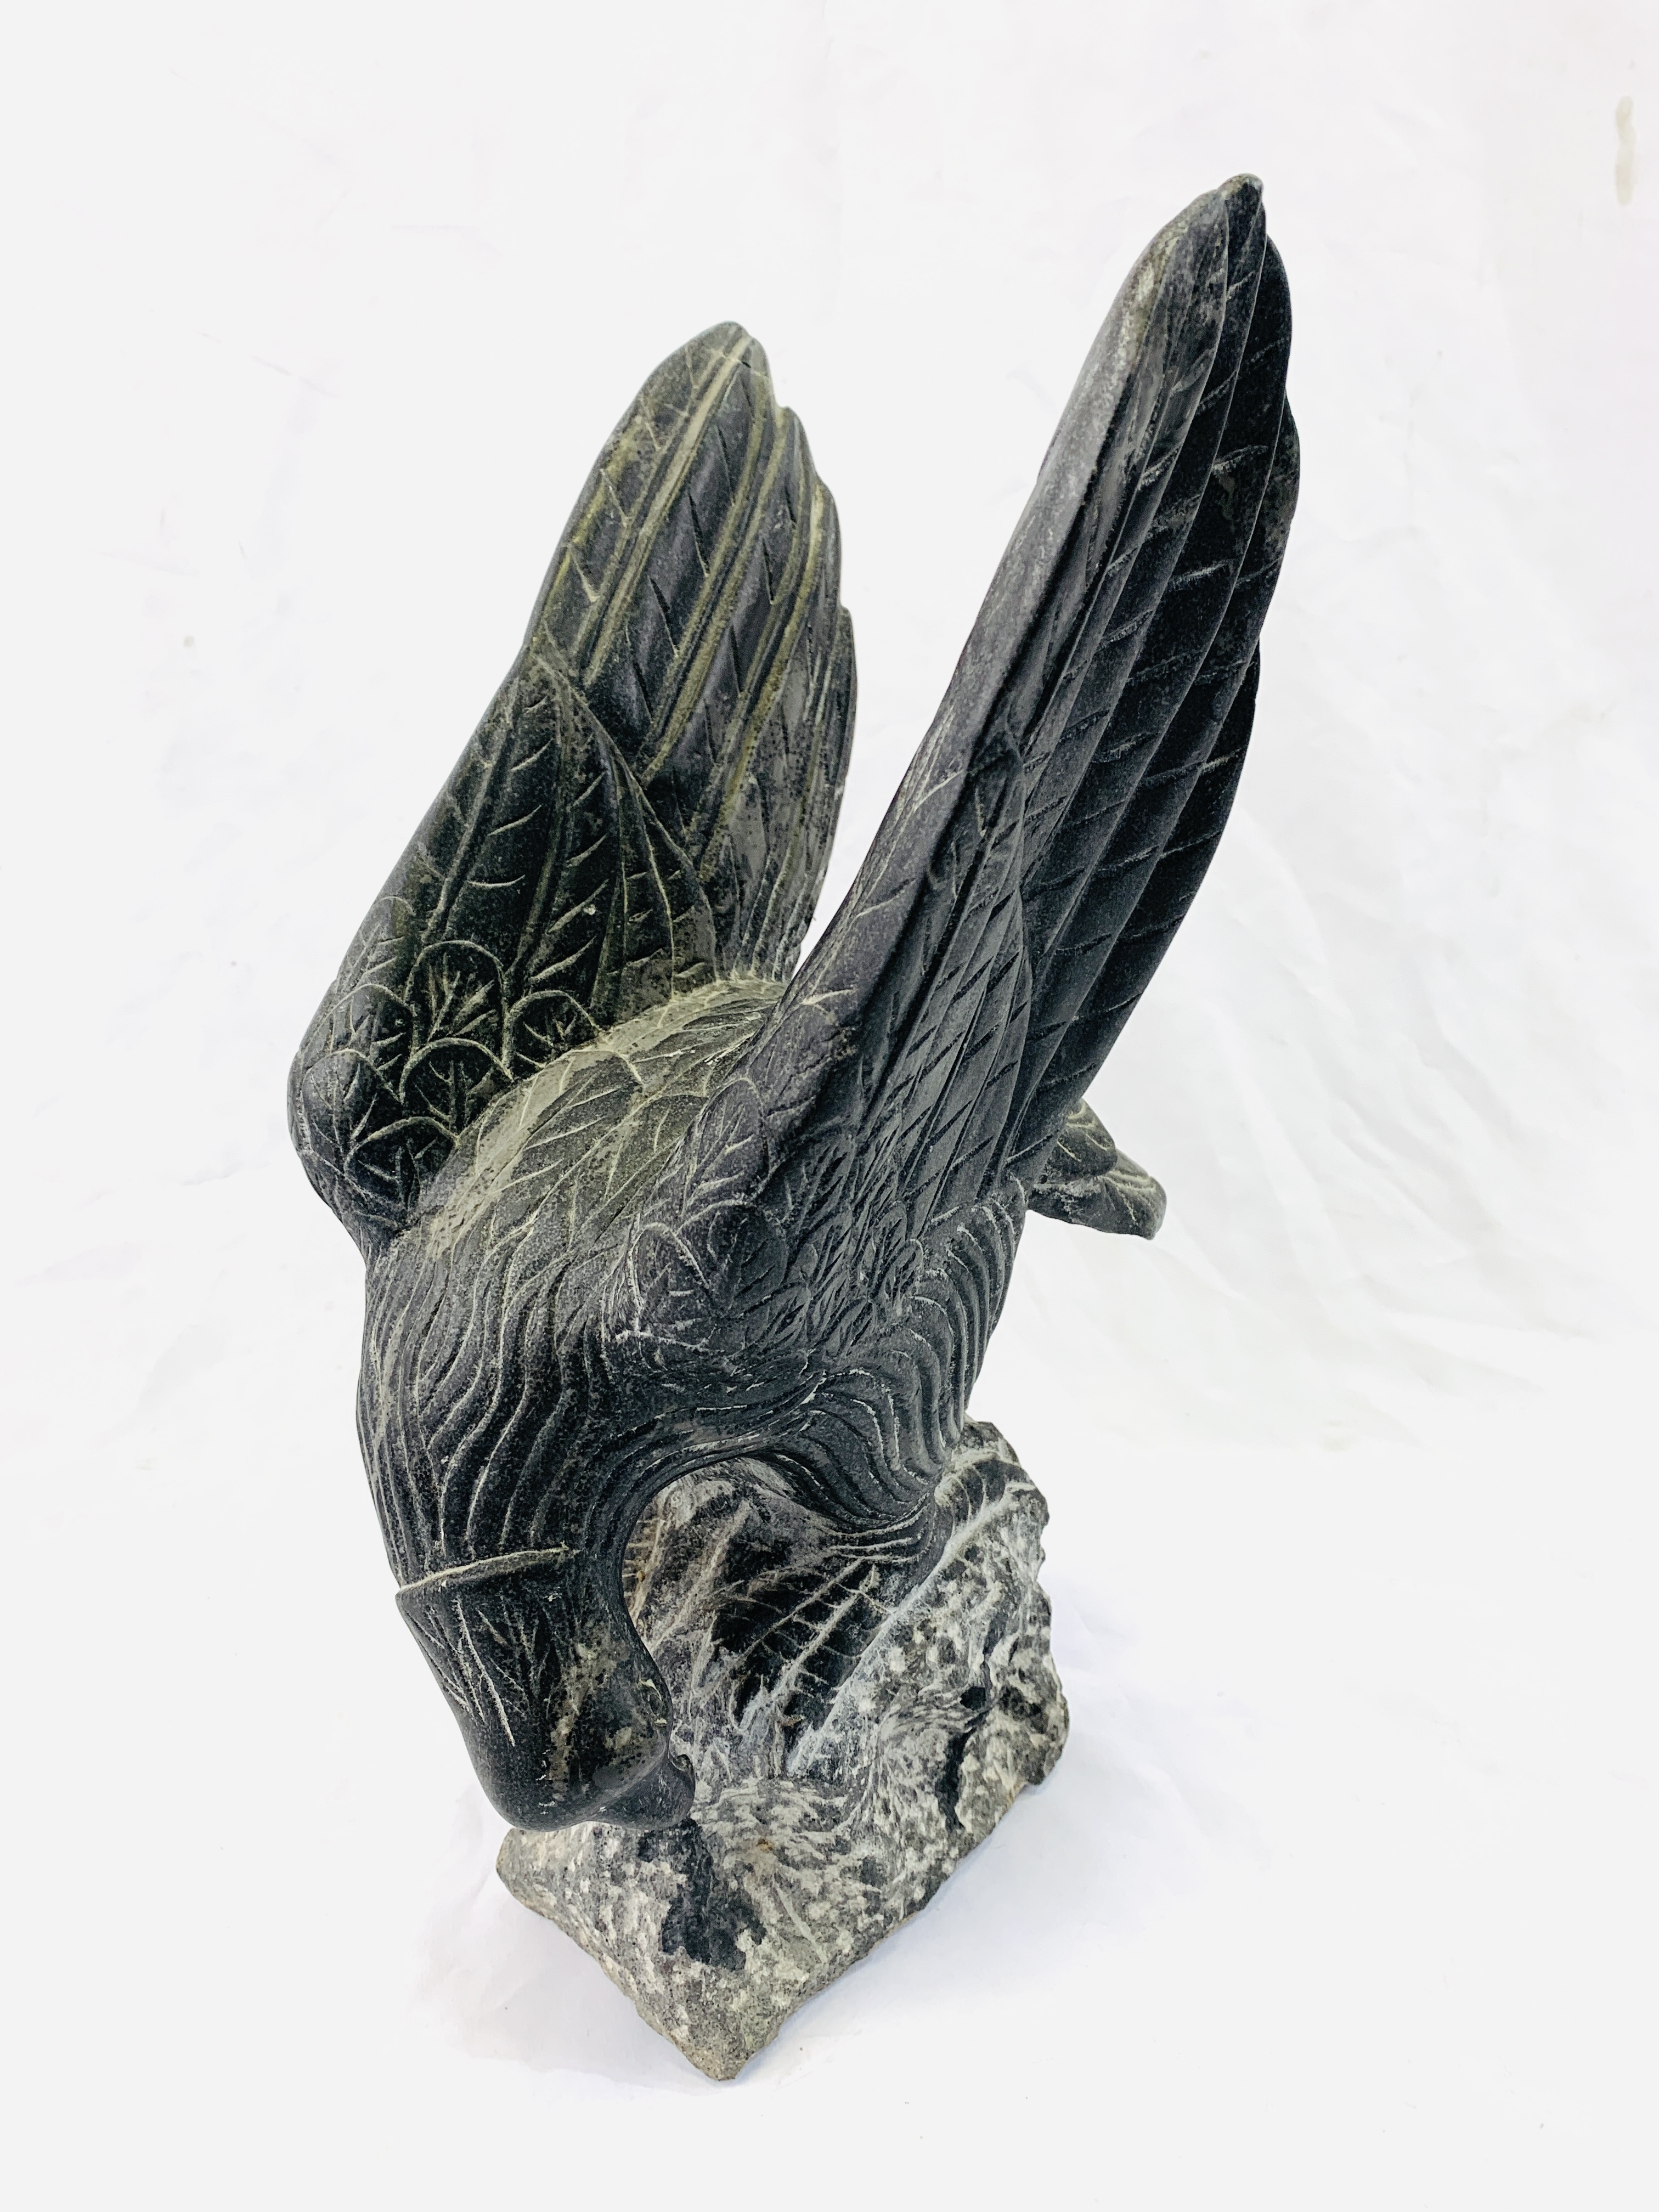 A stone eagle - Image 3 of 6